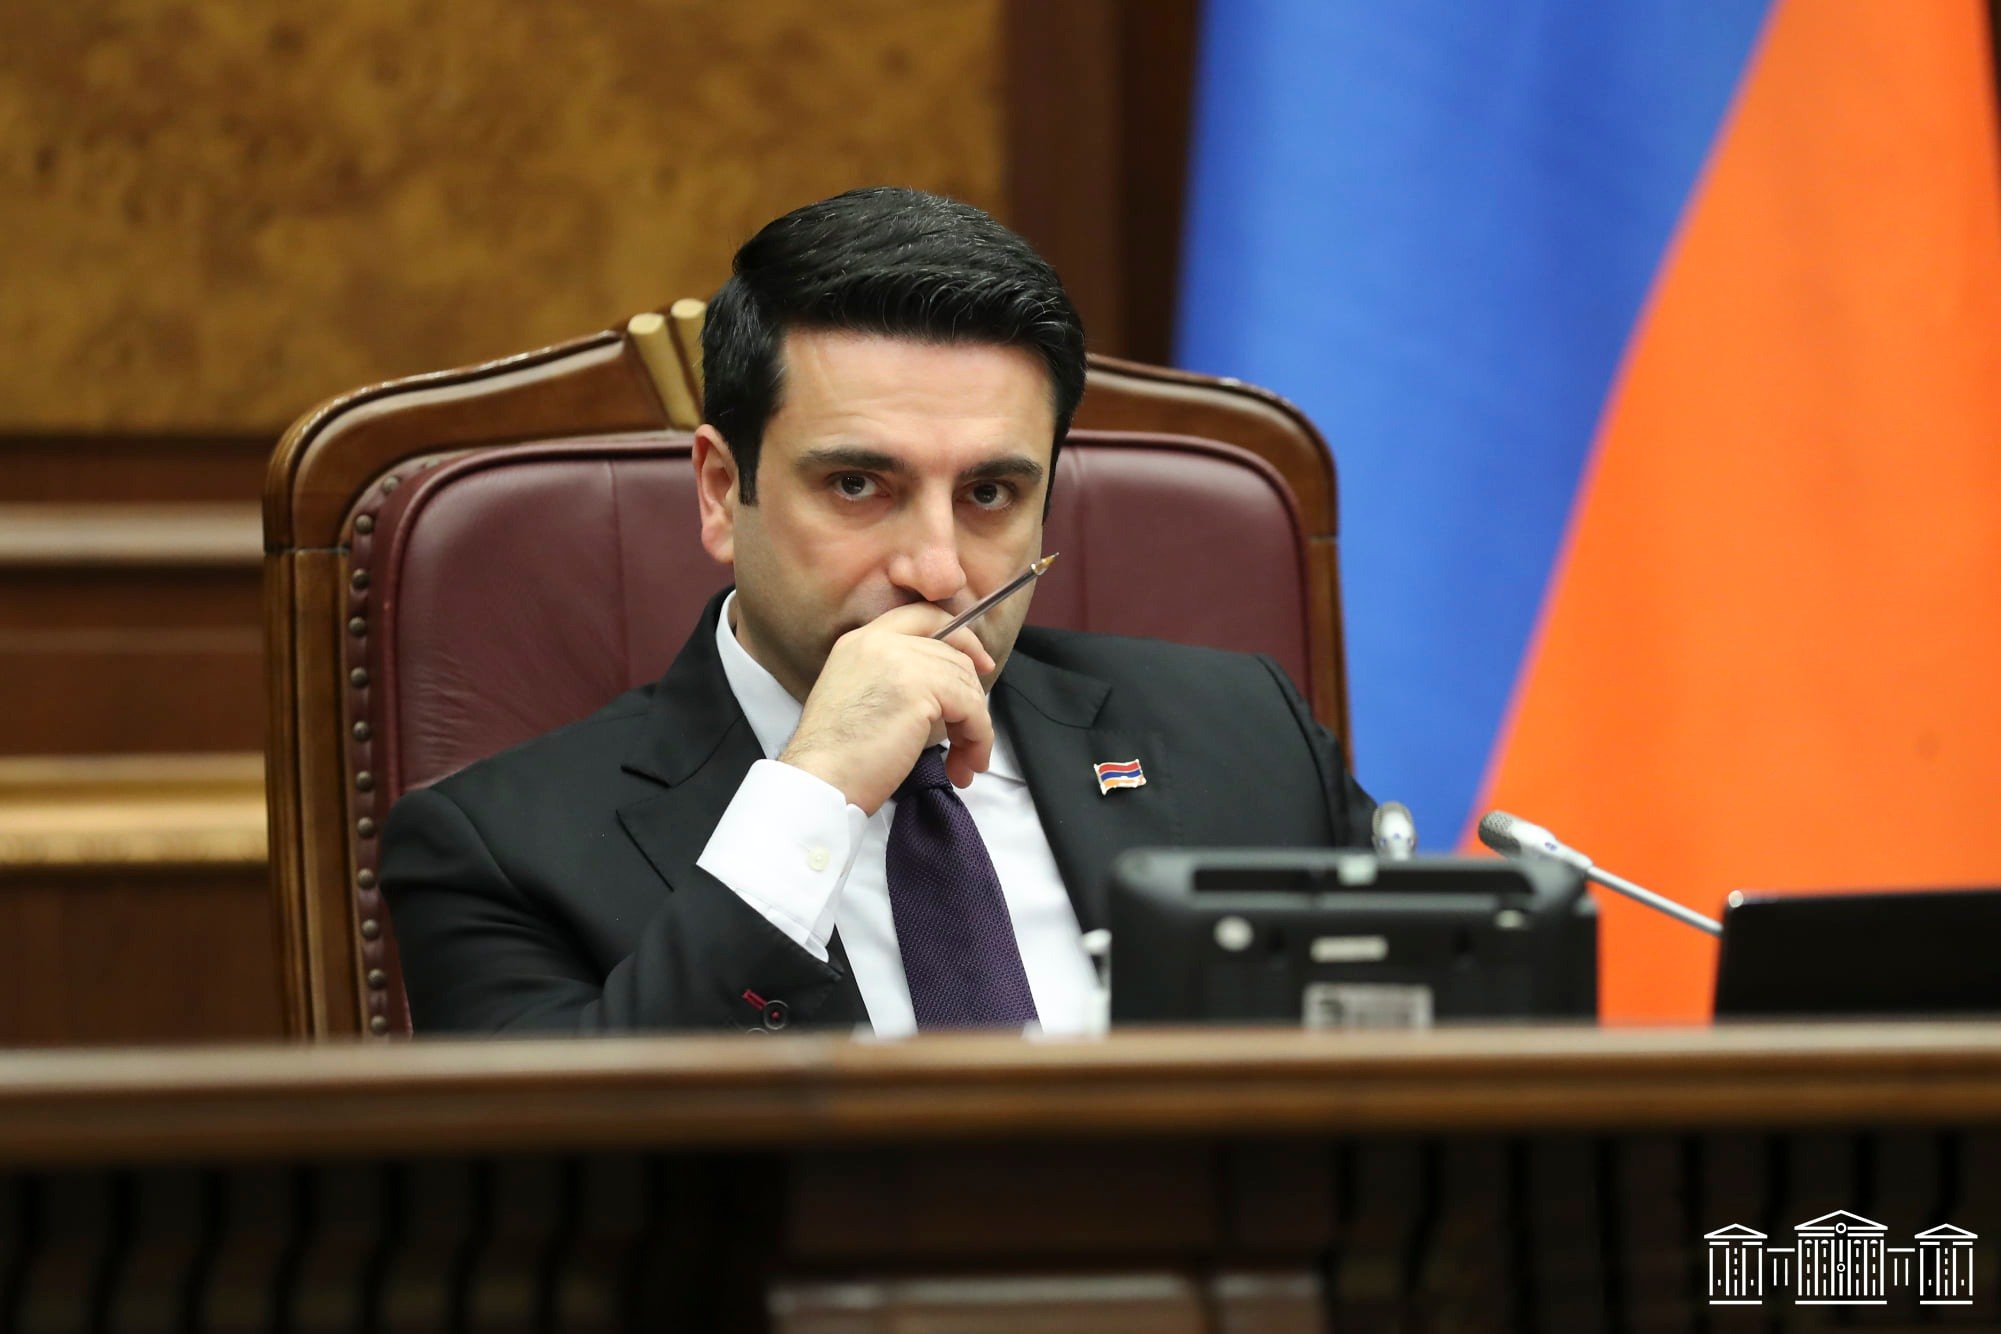 ՍԴ-ն հետաձգել է Ալեն Սիմոնյանի՝ ԱԺ նախագահի պաշտոնում ընտրության սահմանադրականությունը վիճարկող հայցի քննությունը